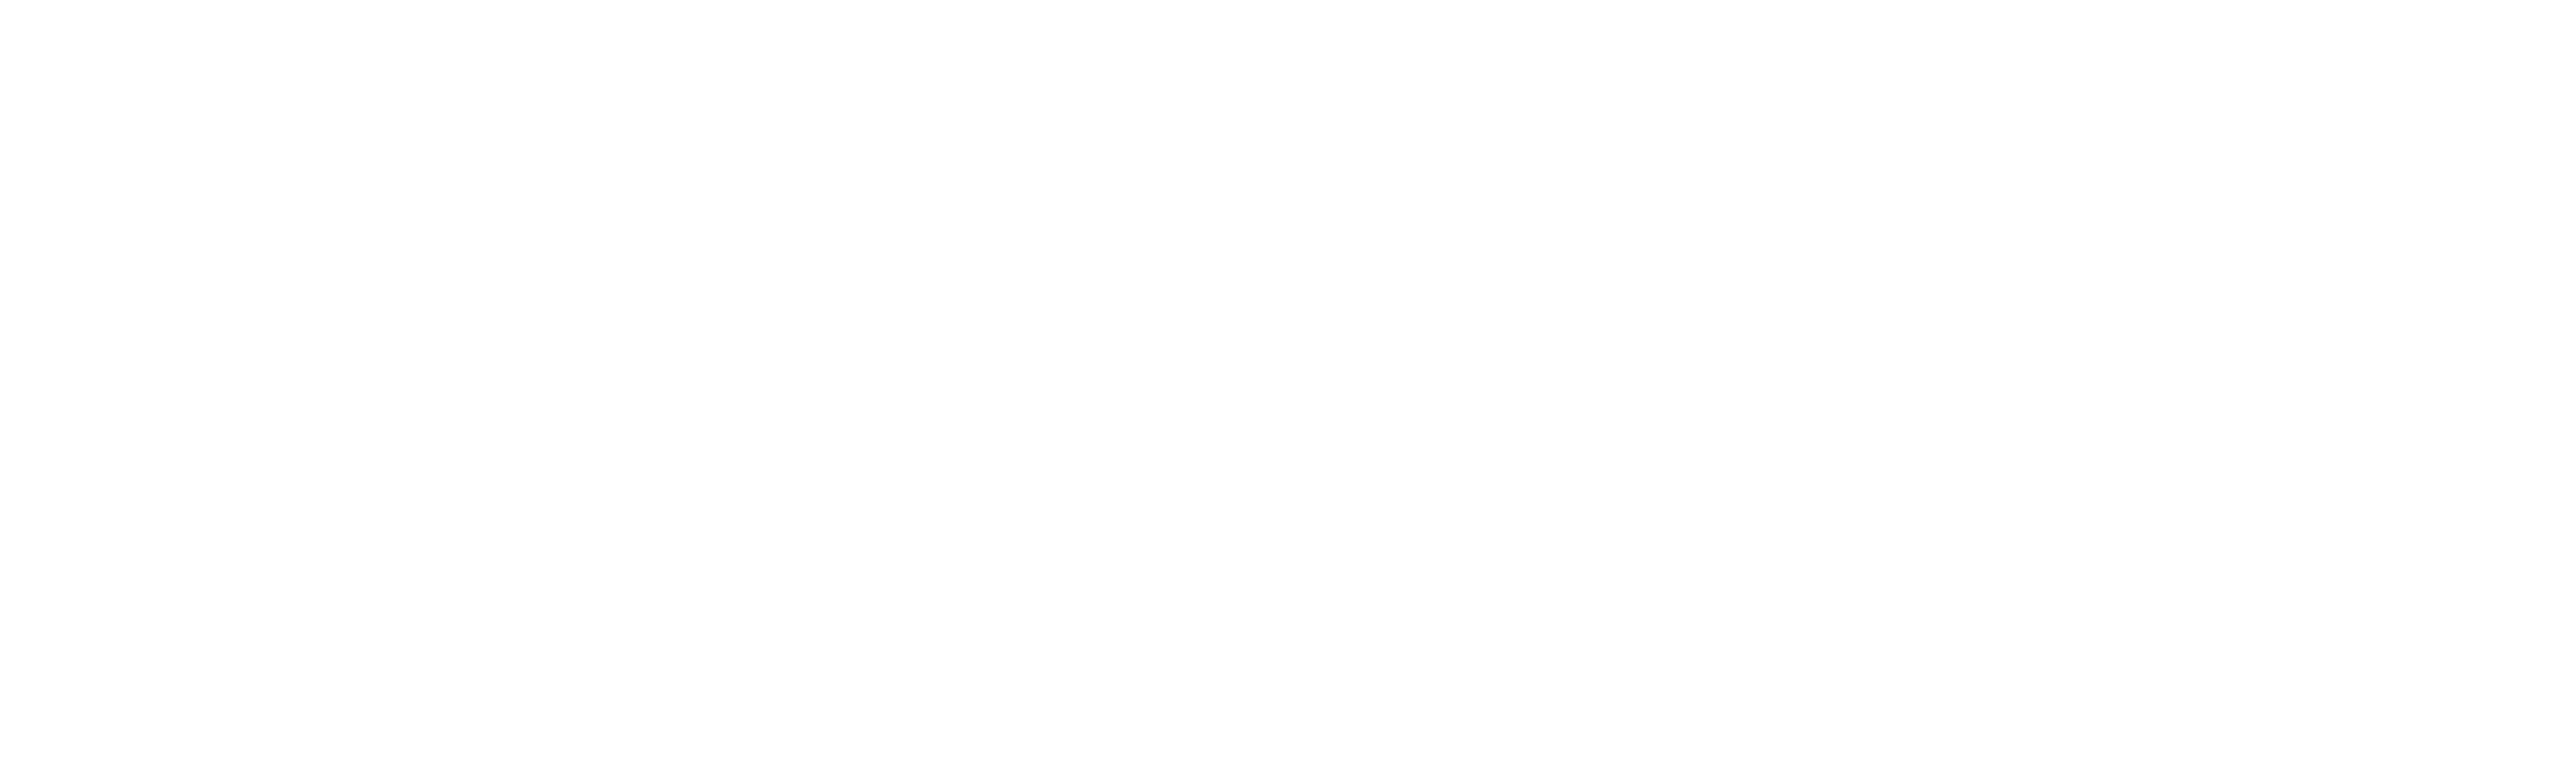 Logotipo de CogniFit Programas de entrenamiento cerebral